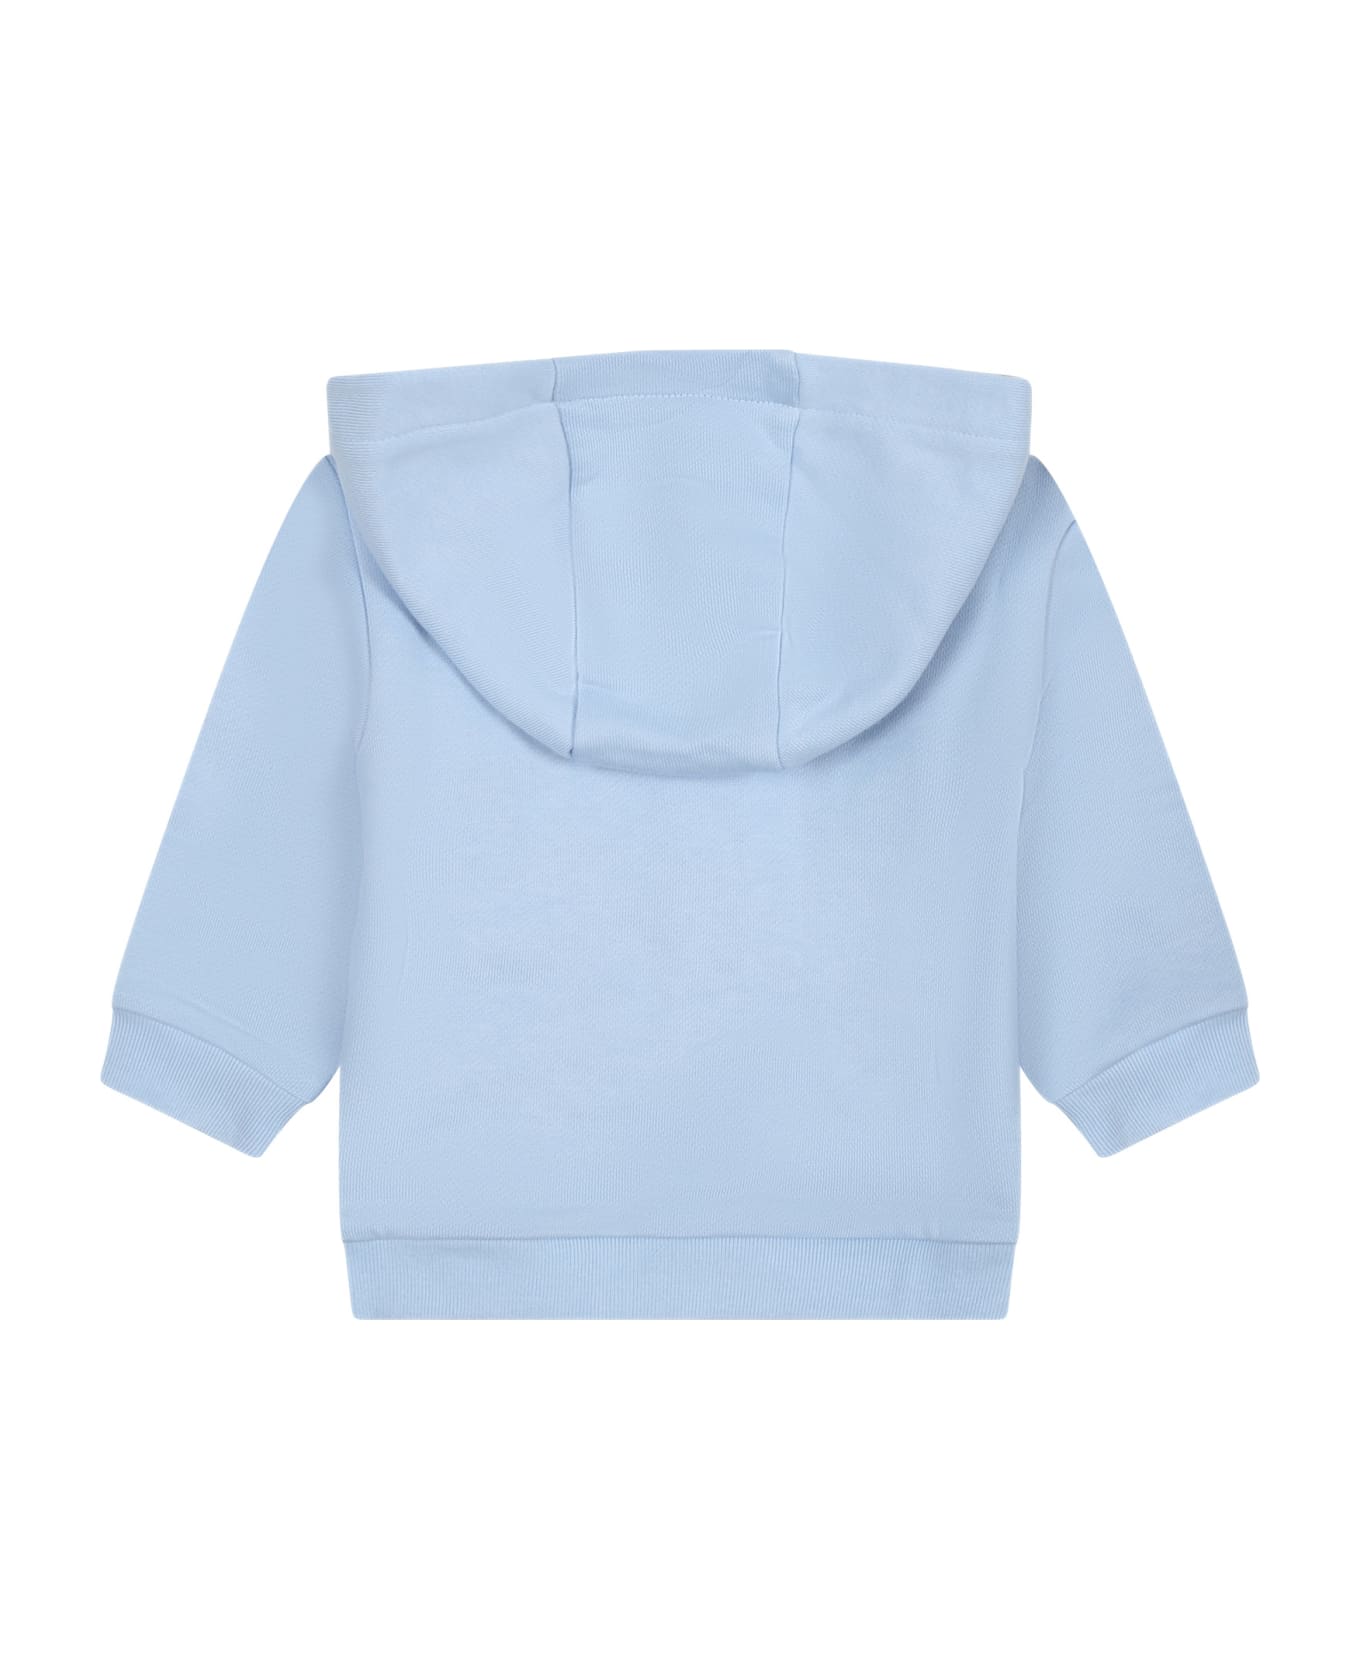 Fendi Light Blue Sweatshirt For Baby Boy With Logo - Light Blue ニットウェア＆スウェットシャツ